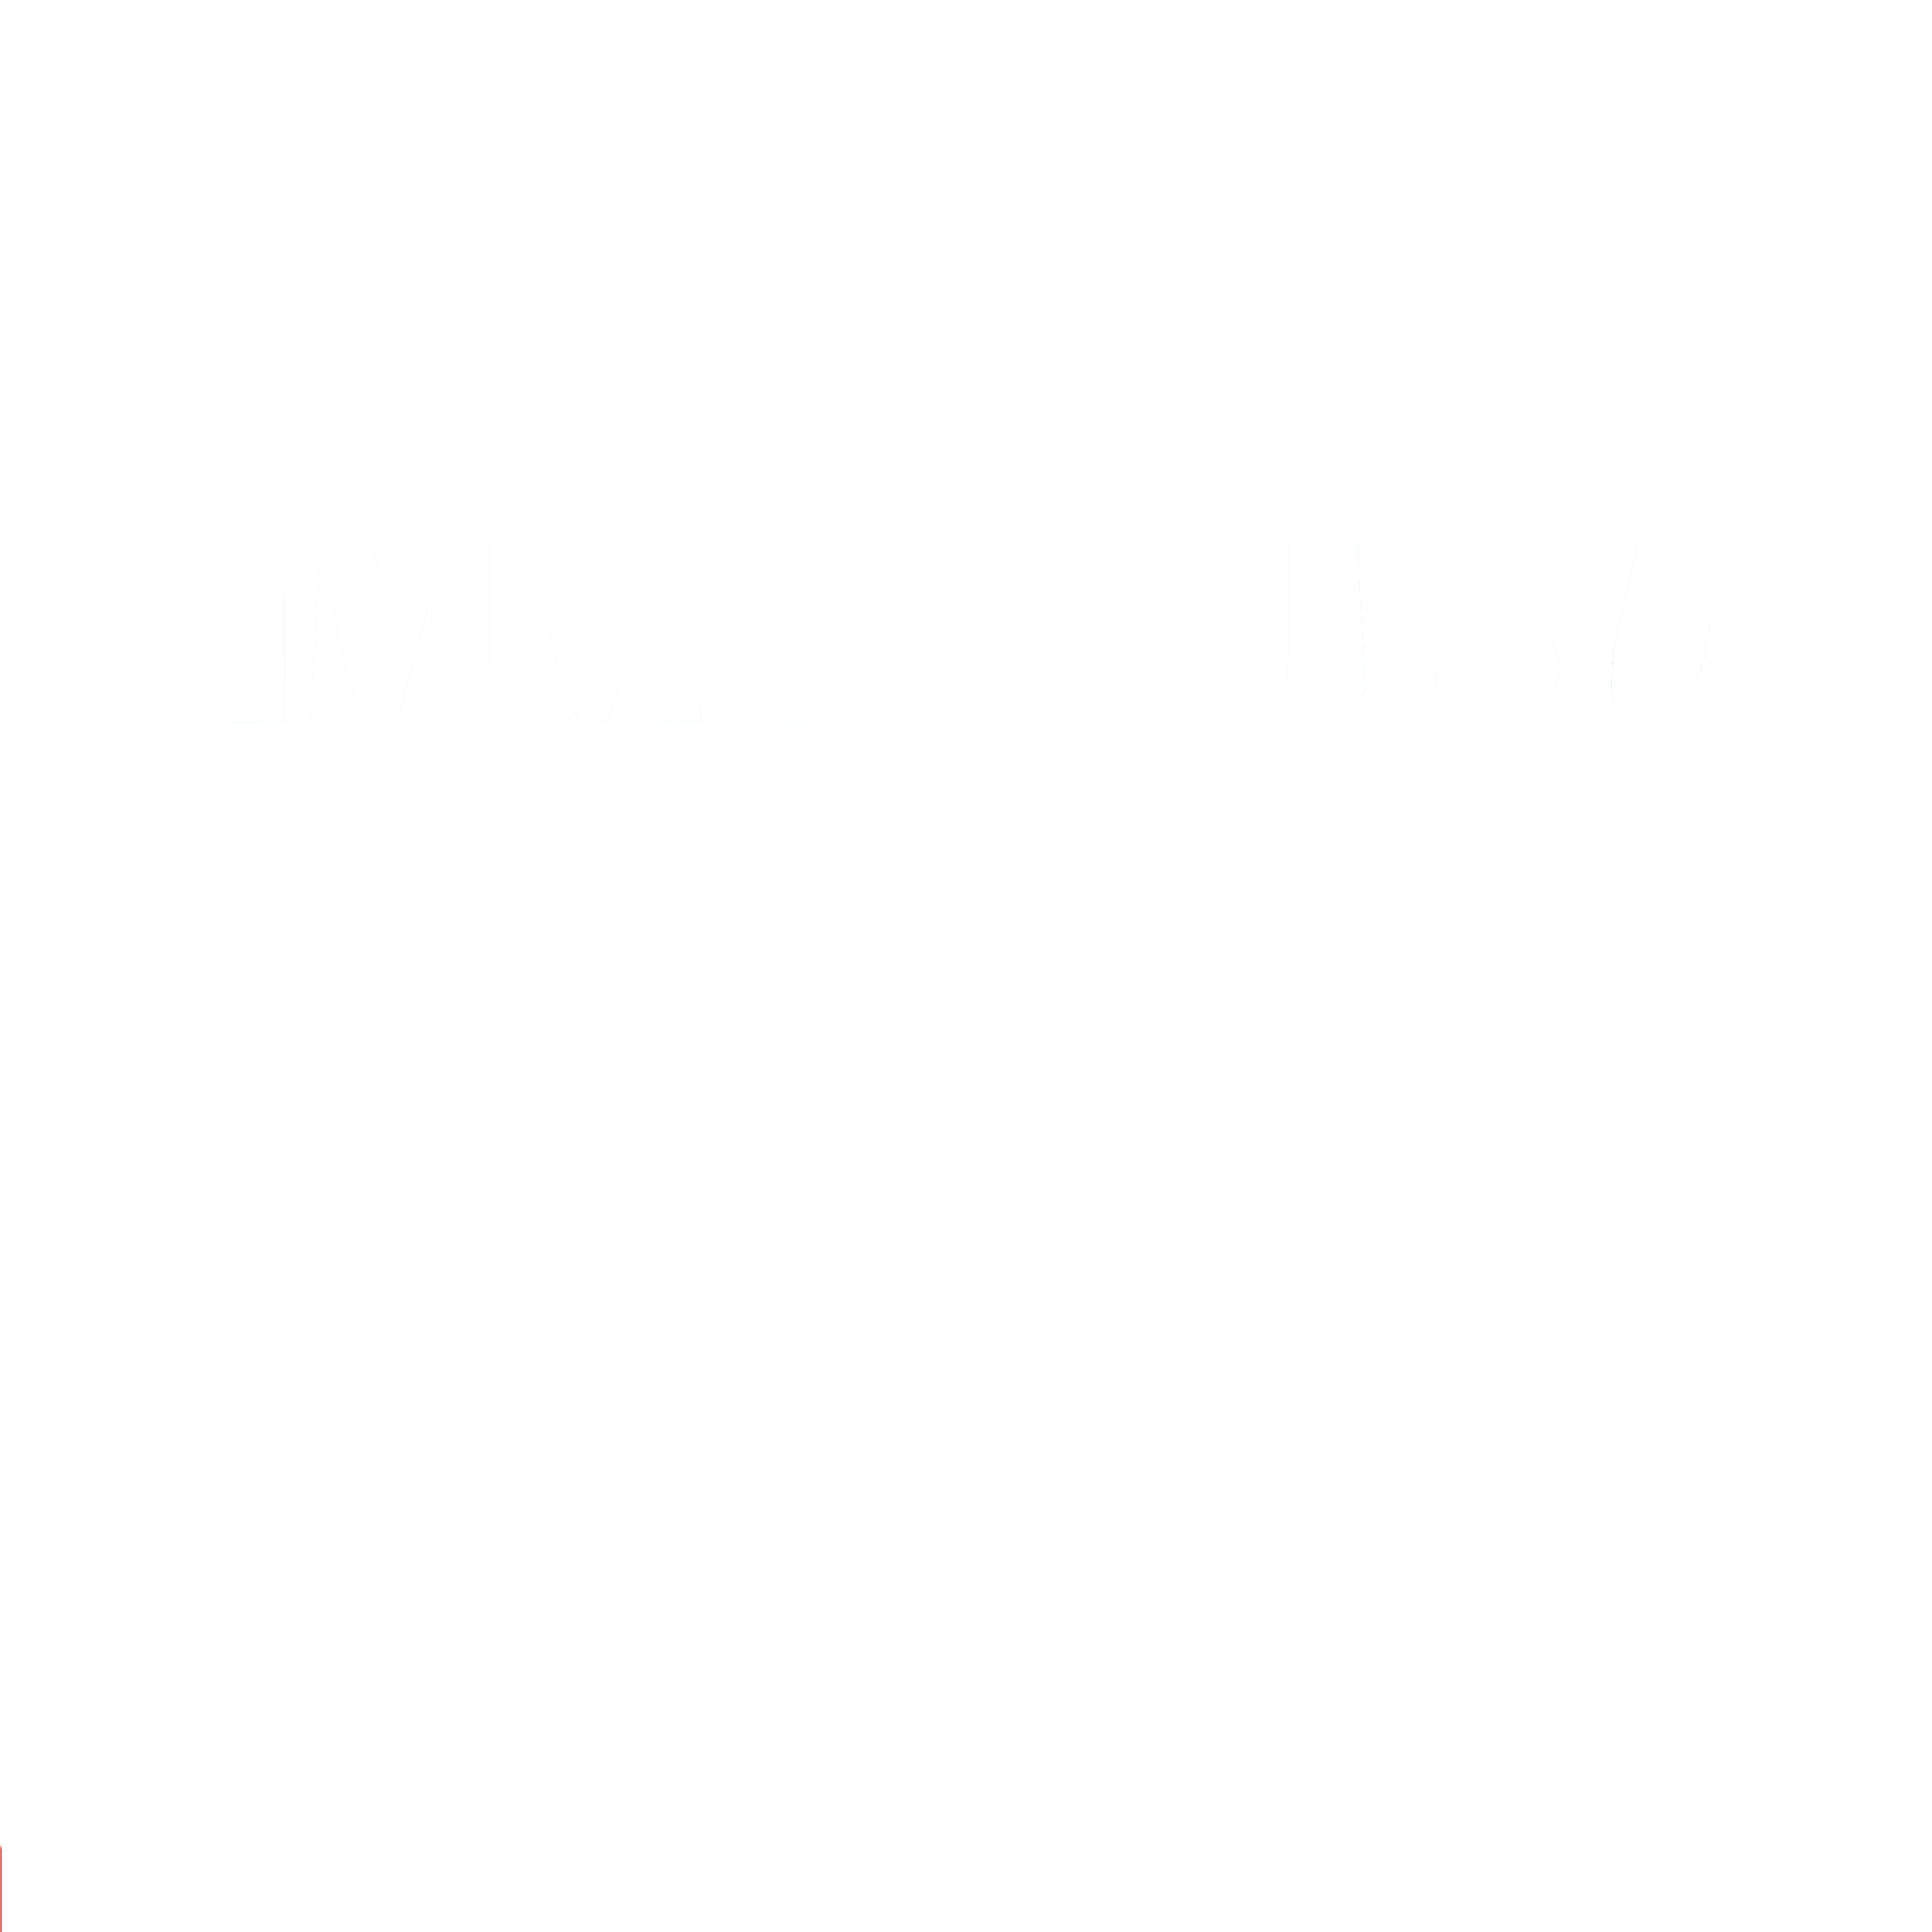 Immy Owusu